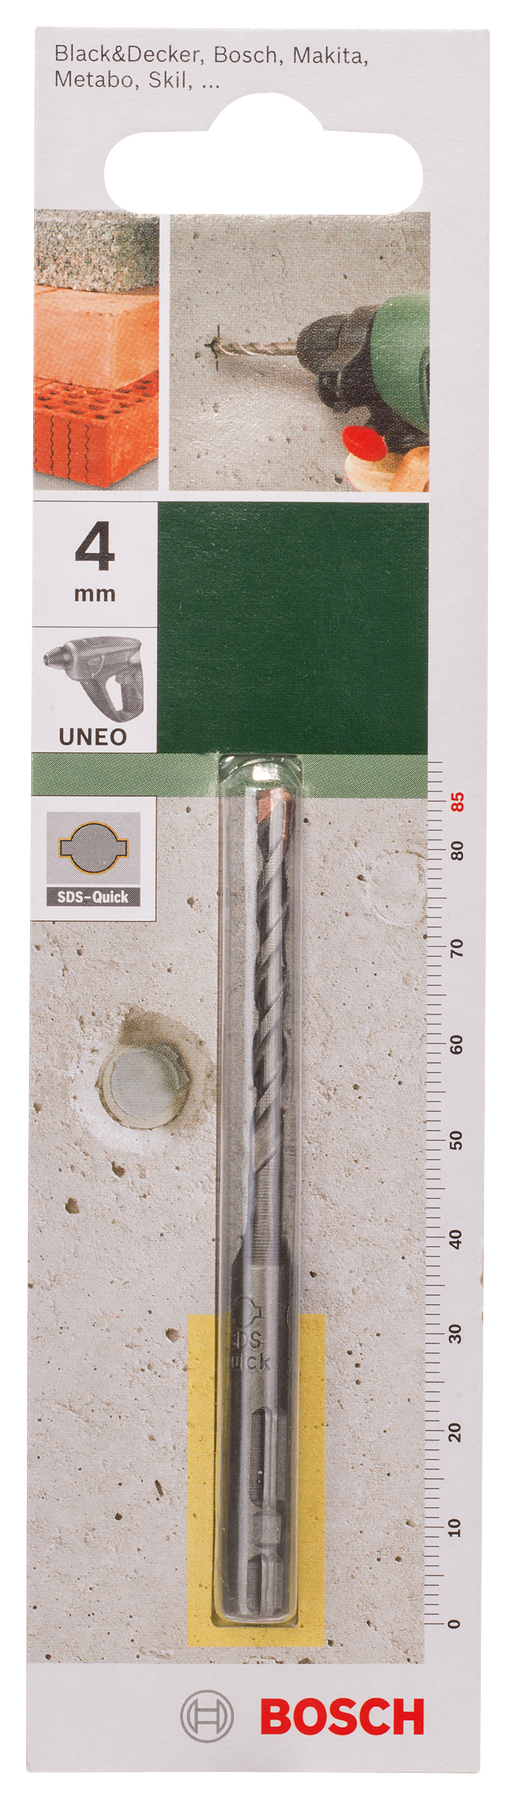 Bosch DIY Uneo Bohrer für Beton/Stein SDS-Quick, Ø 4 x 40 x 85 mm